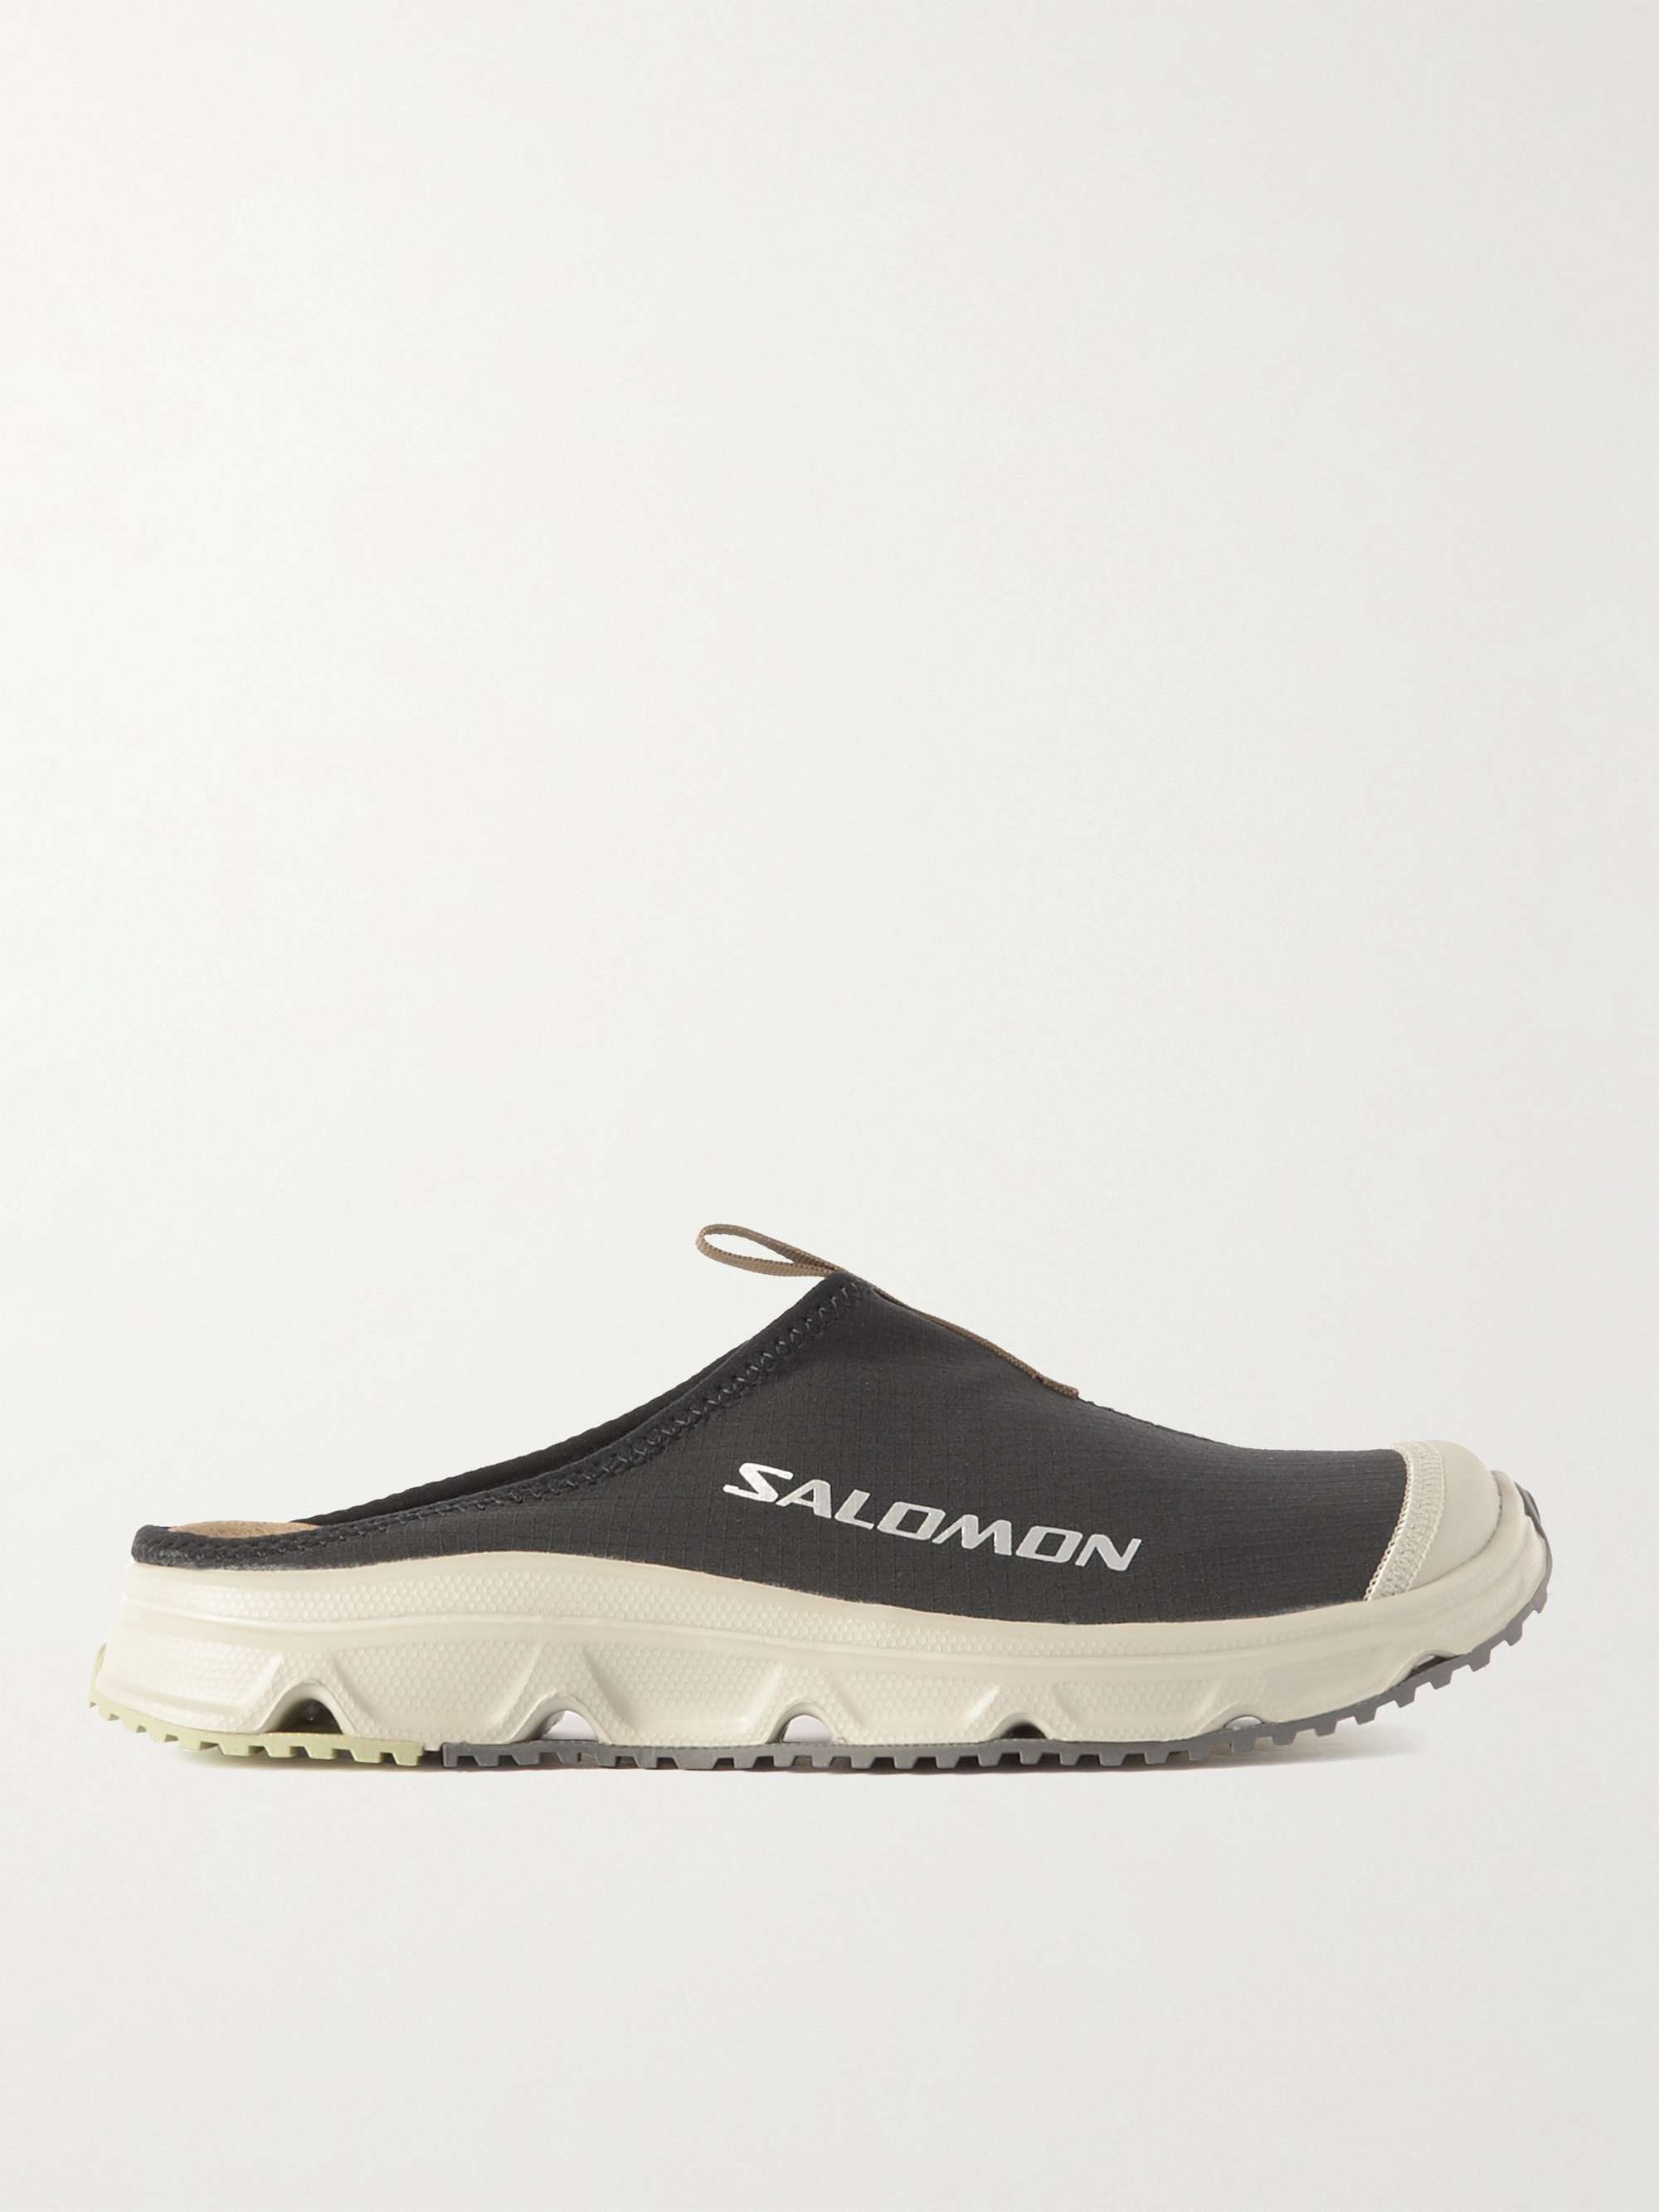 SALOMON Rx Slide 3.0 Ripstop and Mesh Slip-On Sneakers for Men | MR PORTER